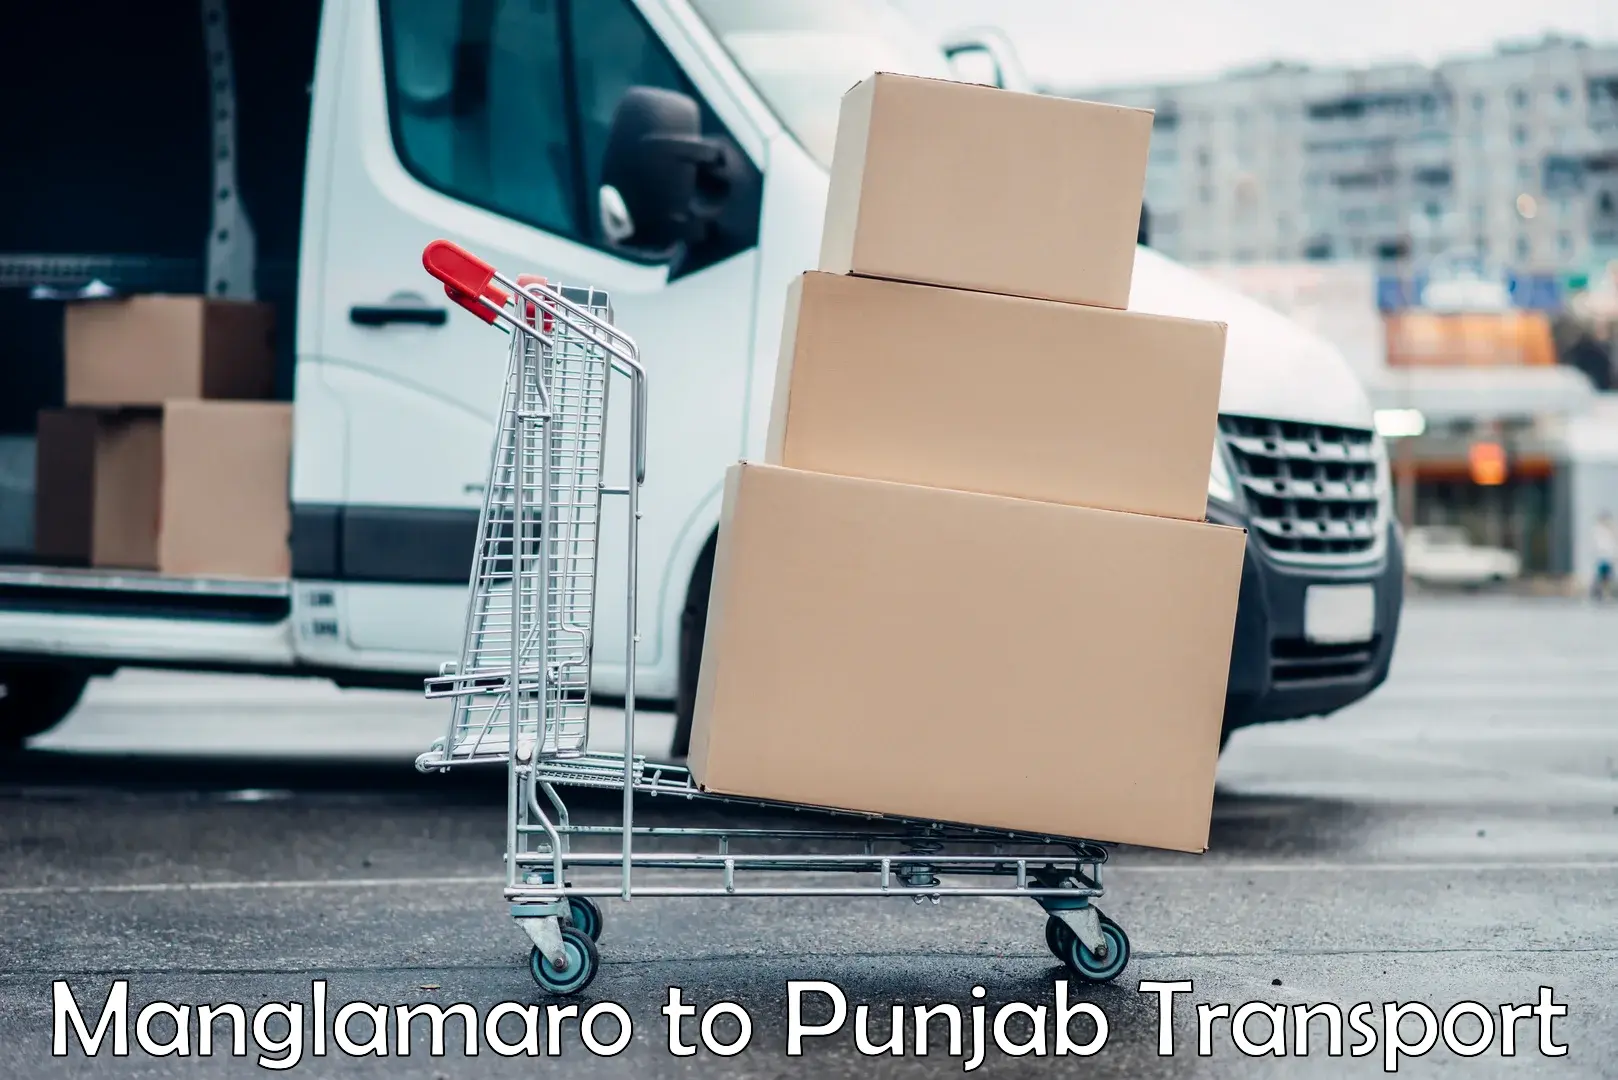 Transport shared services Manglamaro to Punjab